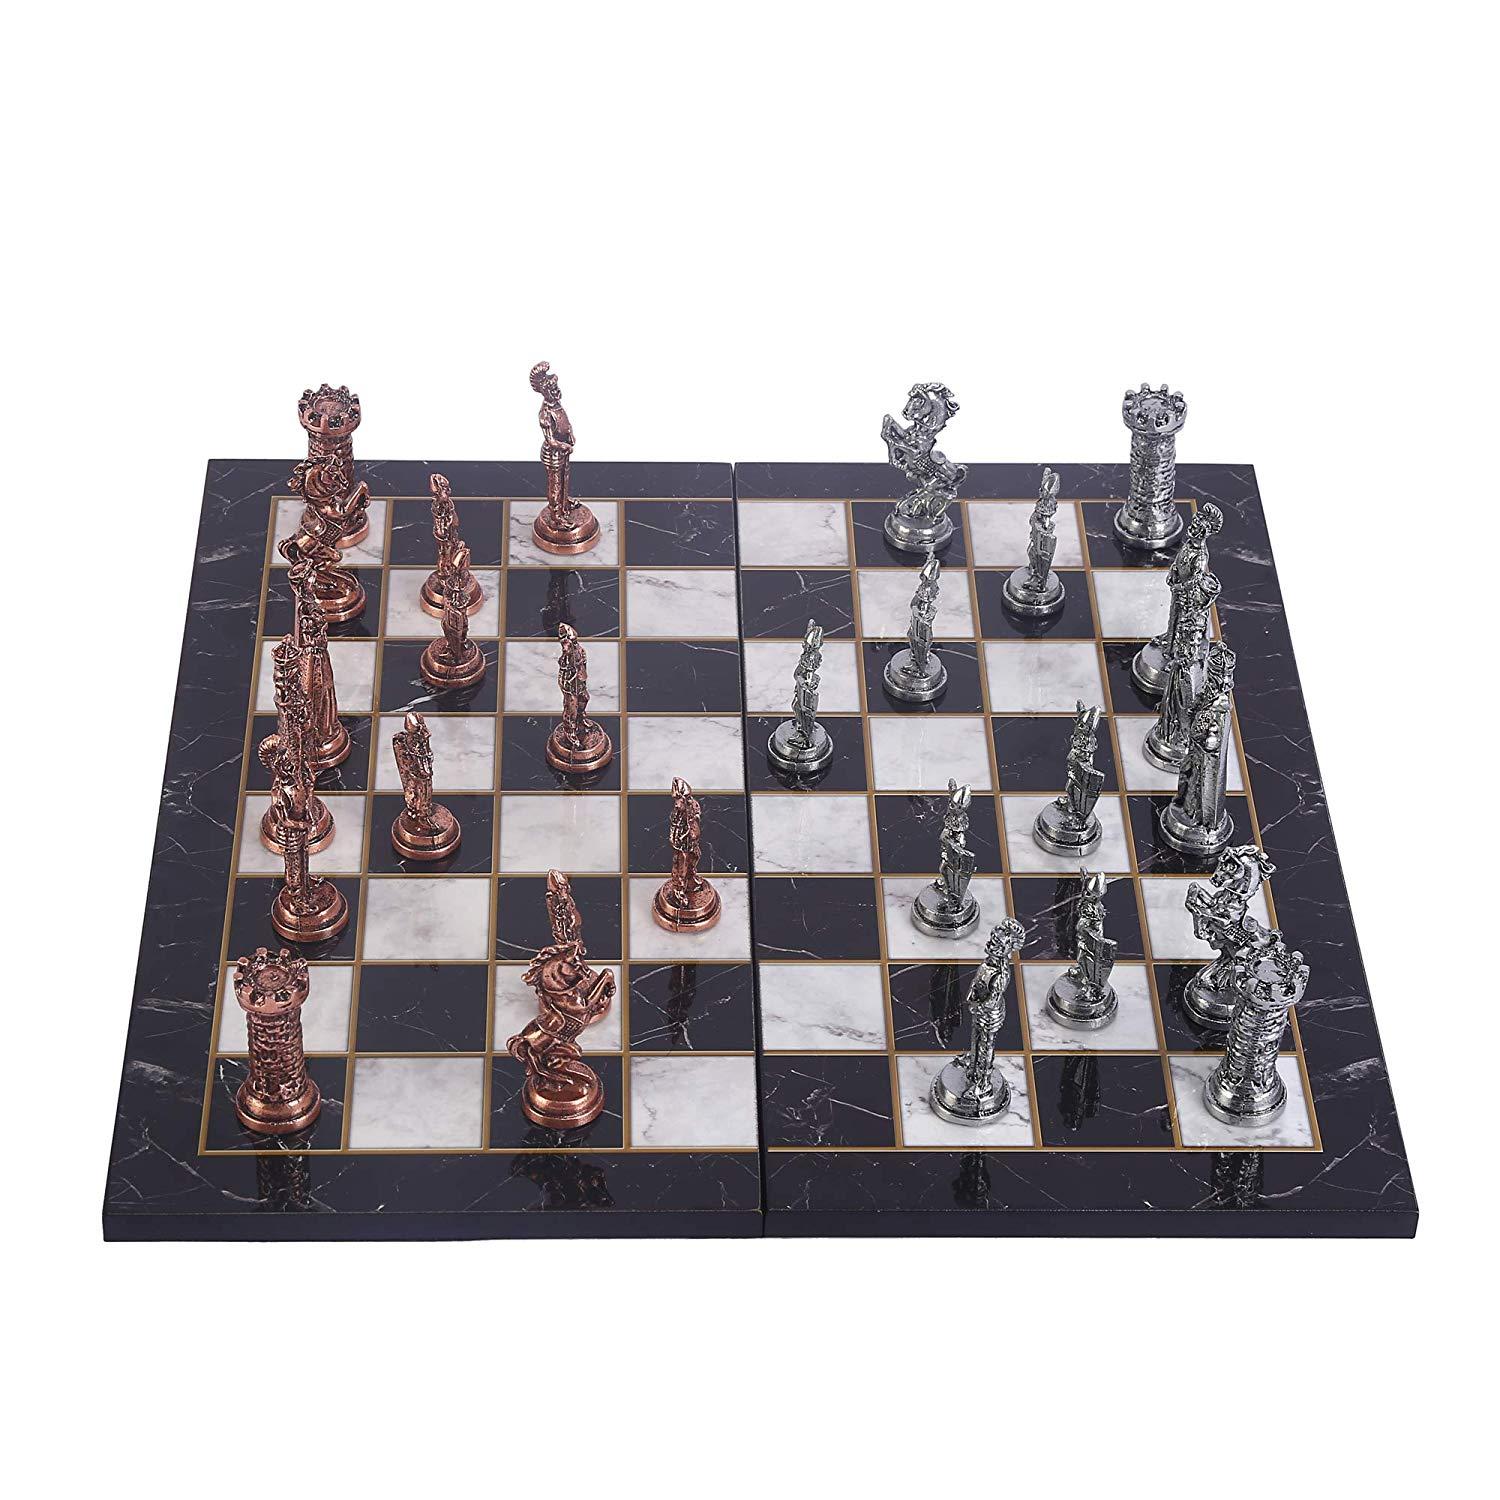 Изображение товара: Шахматный набор Redcoats для взрослых в британском стиле, антикварные медные металлические шахматные наборы для взрослых, деревянные шахматные доски с дизайном мрамора ручной работы, 9 см